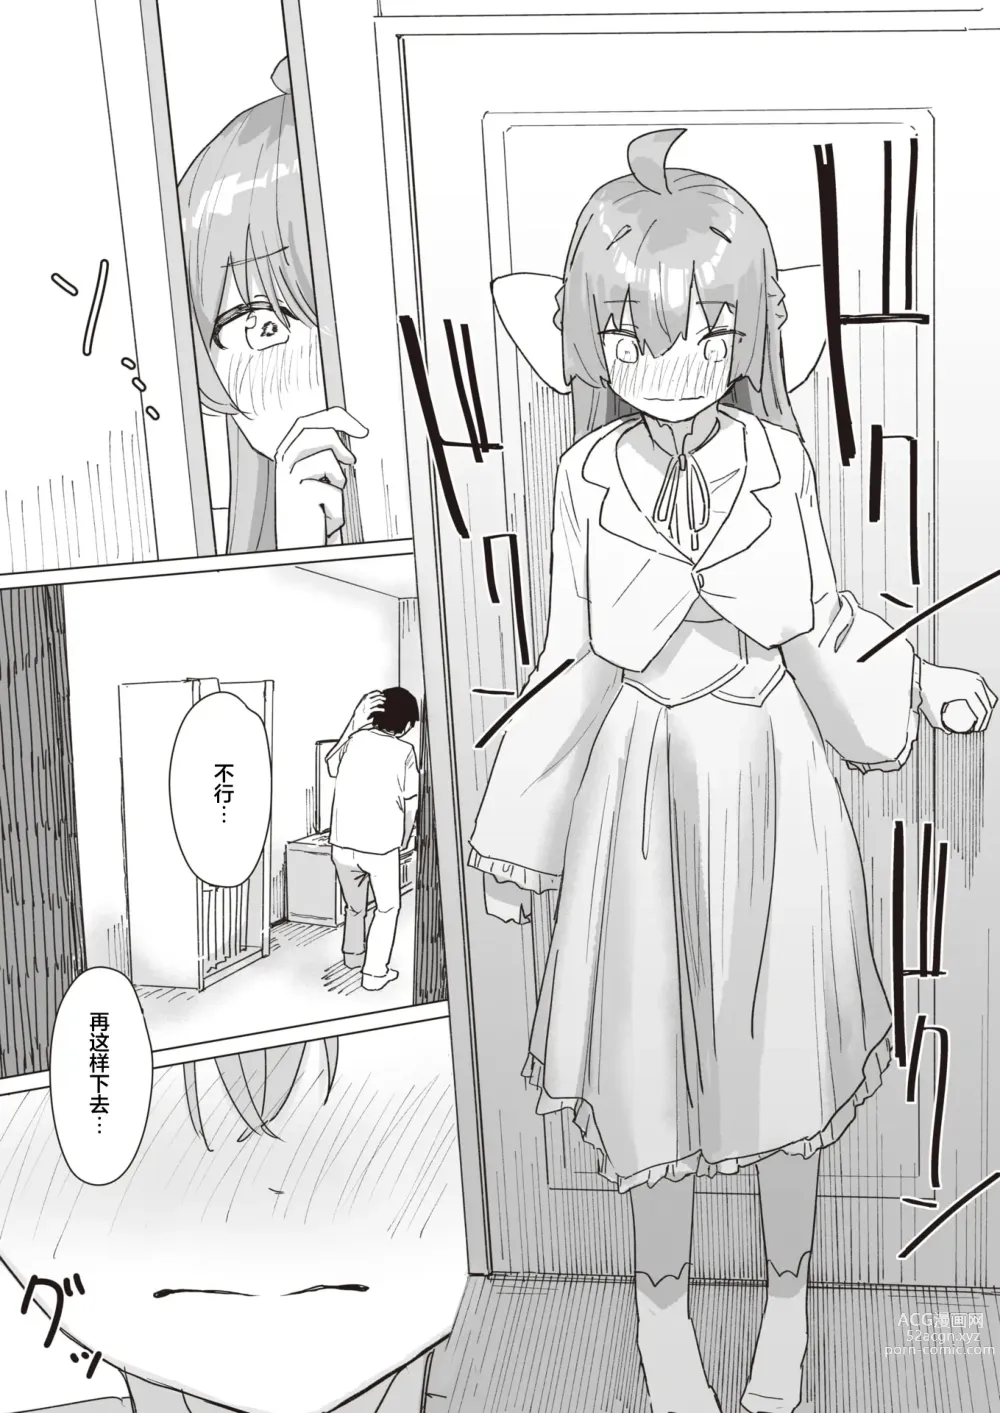 Page 7 of manga Mahou Shoujo no Ongaeshi Kouhen - Magical Girls Giving Back